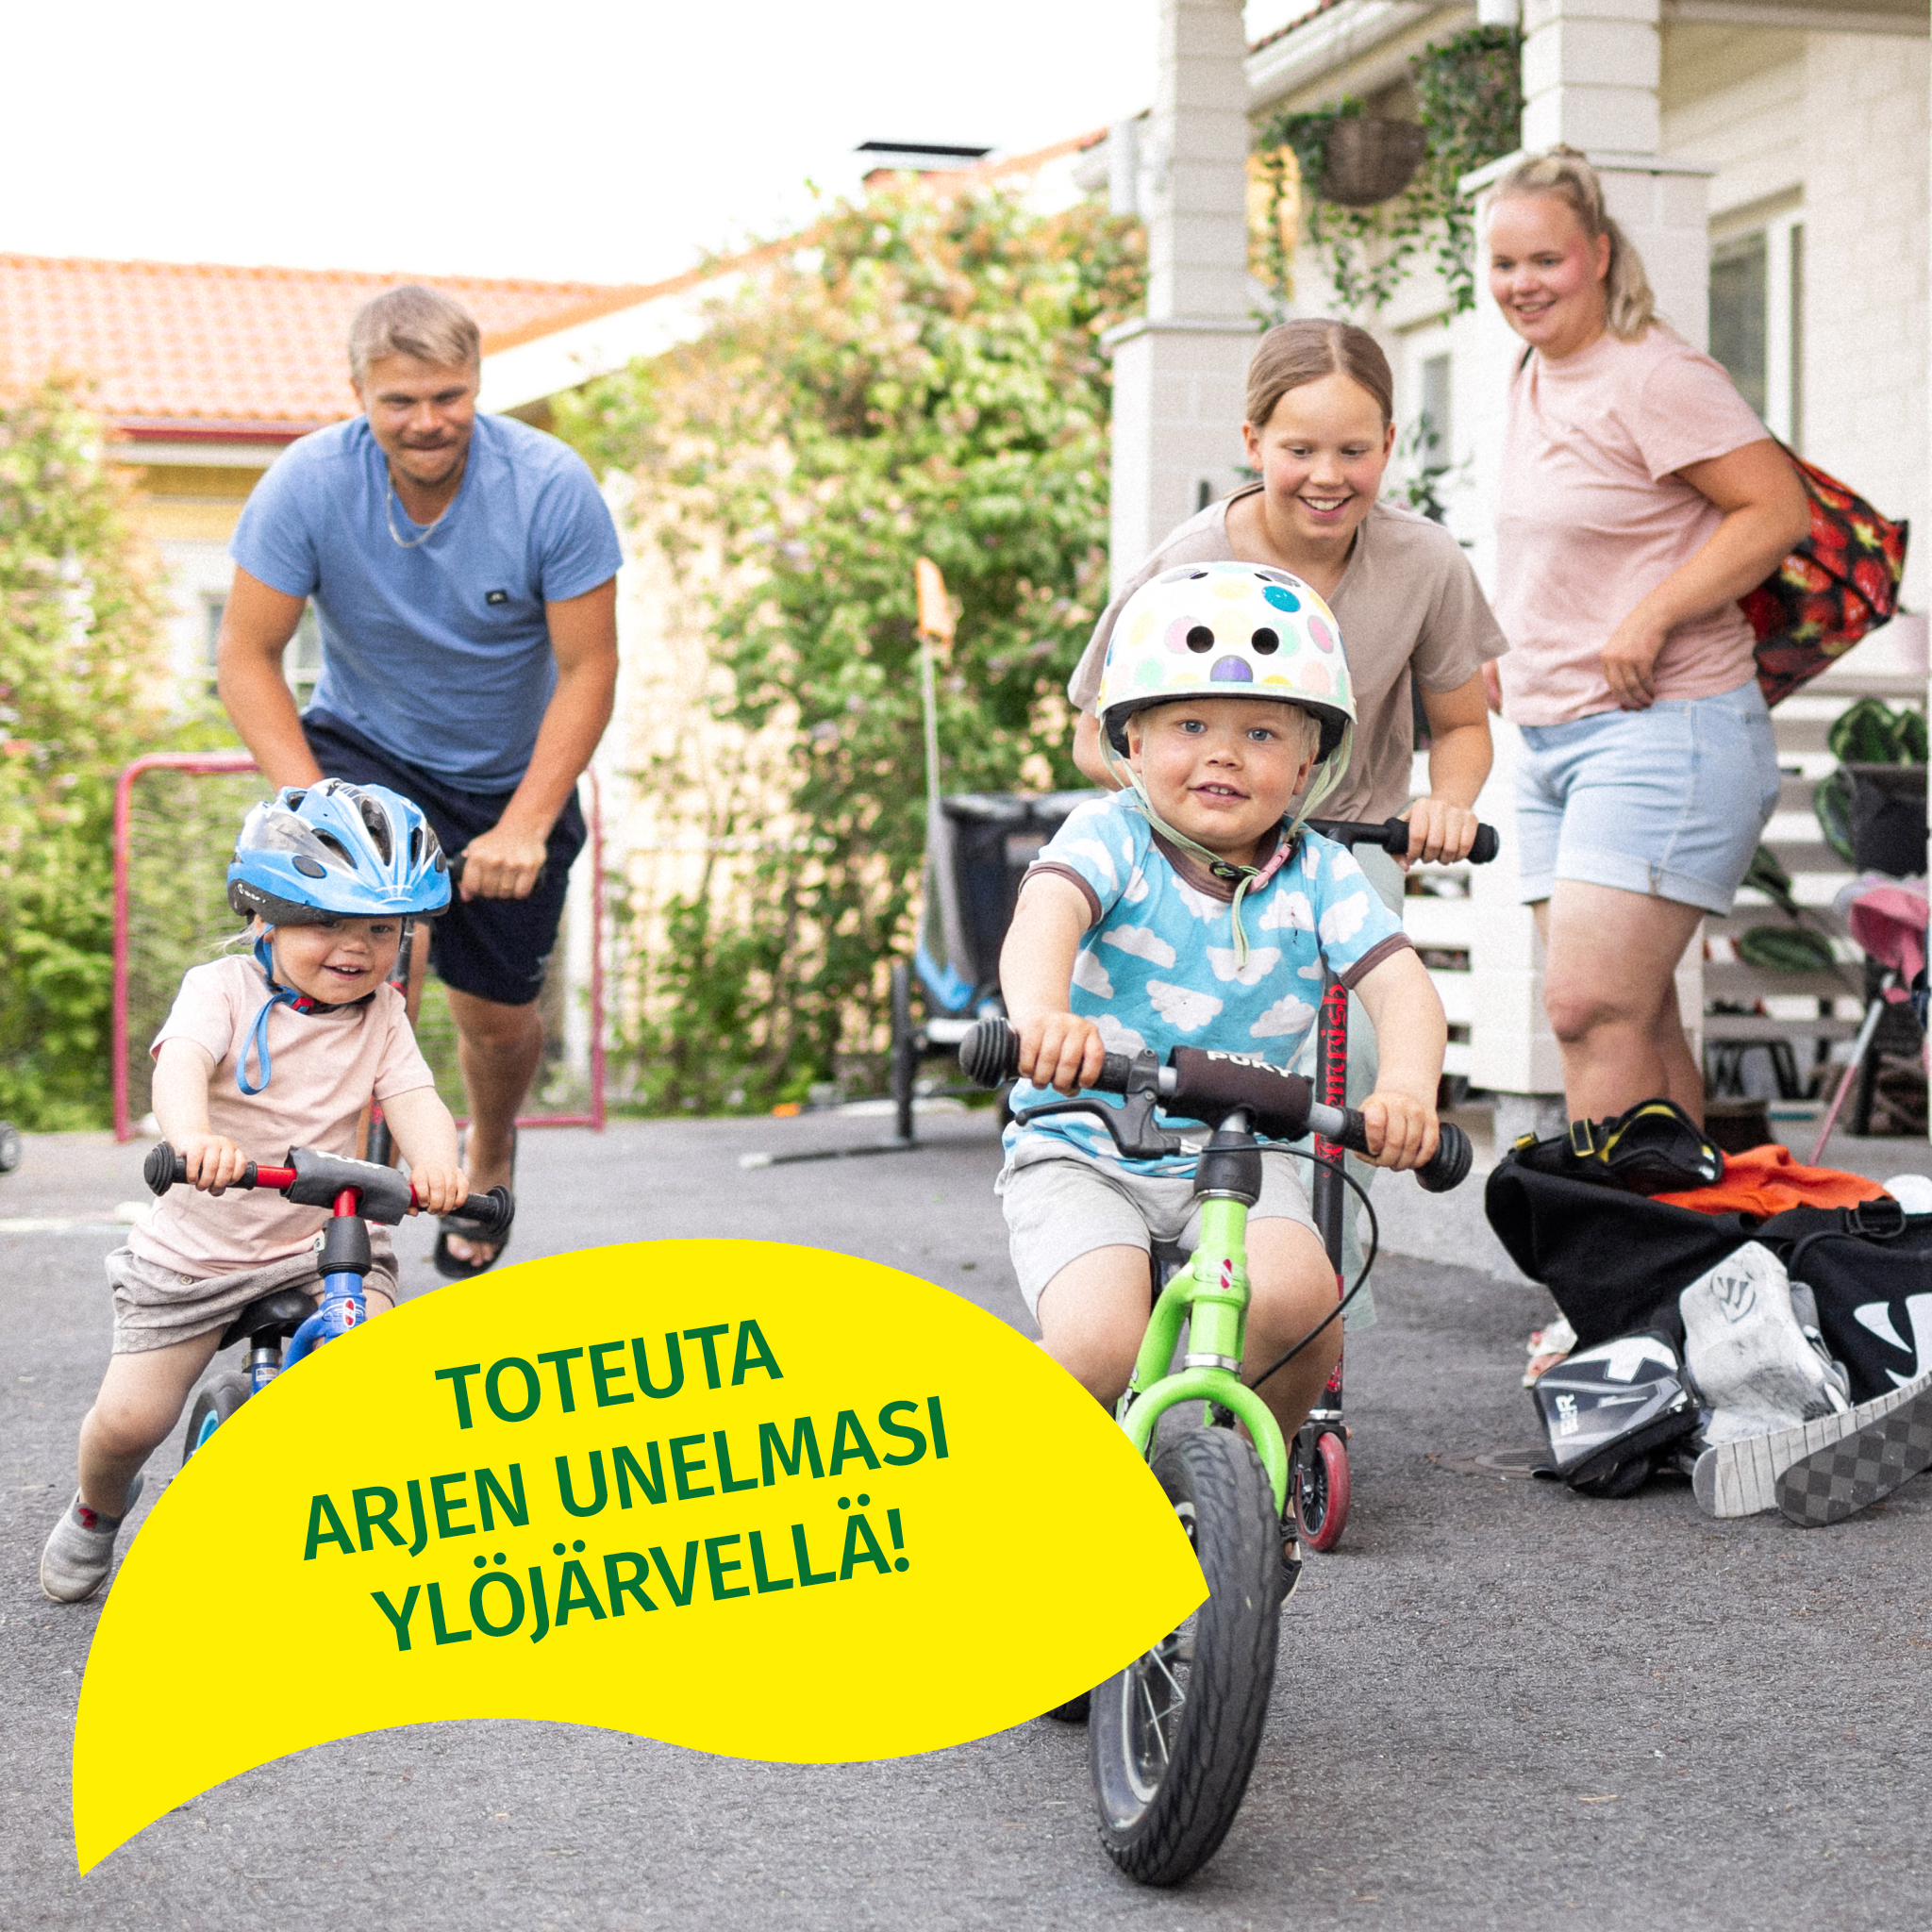 Mainos, jossa perhe pyöräilee ja jossa lukee toteuta arjen unelmasi Ylöjärvellä.